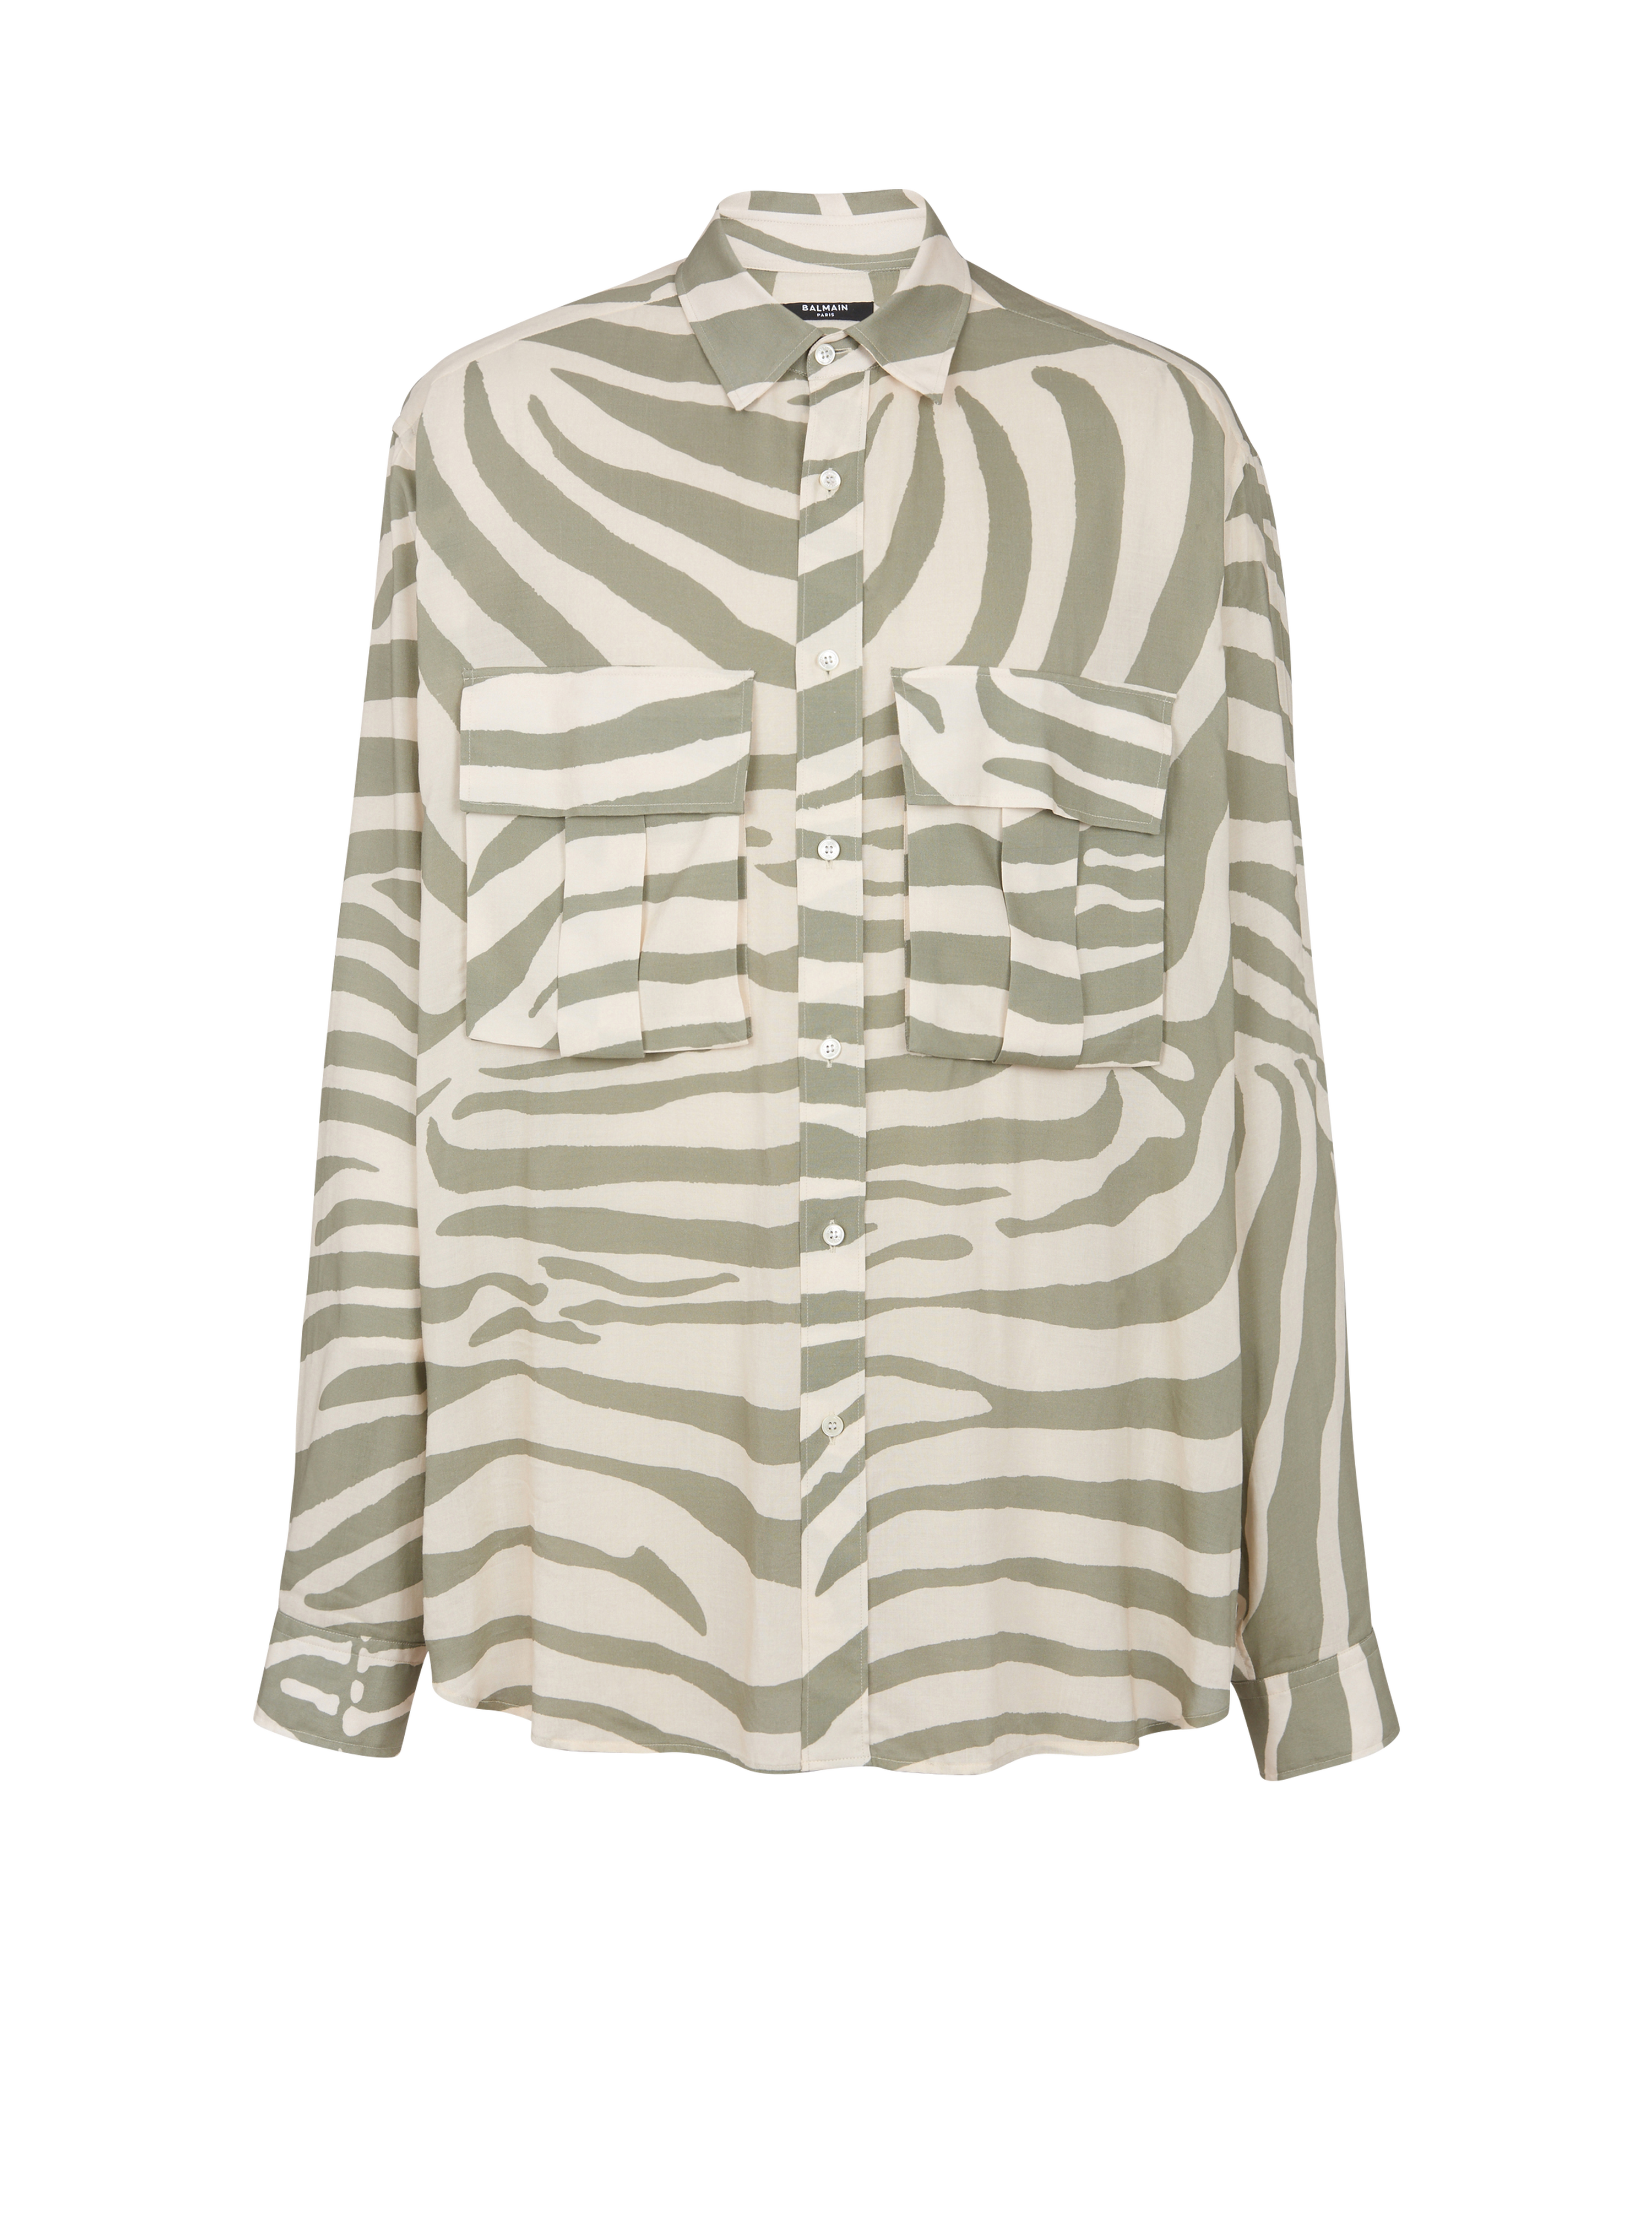 Zebra print shirt, khaki